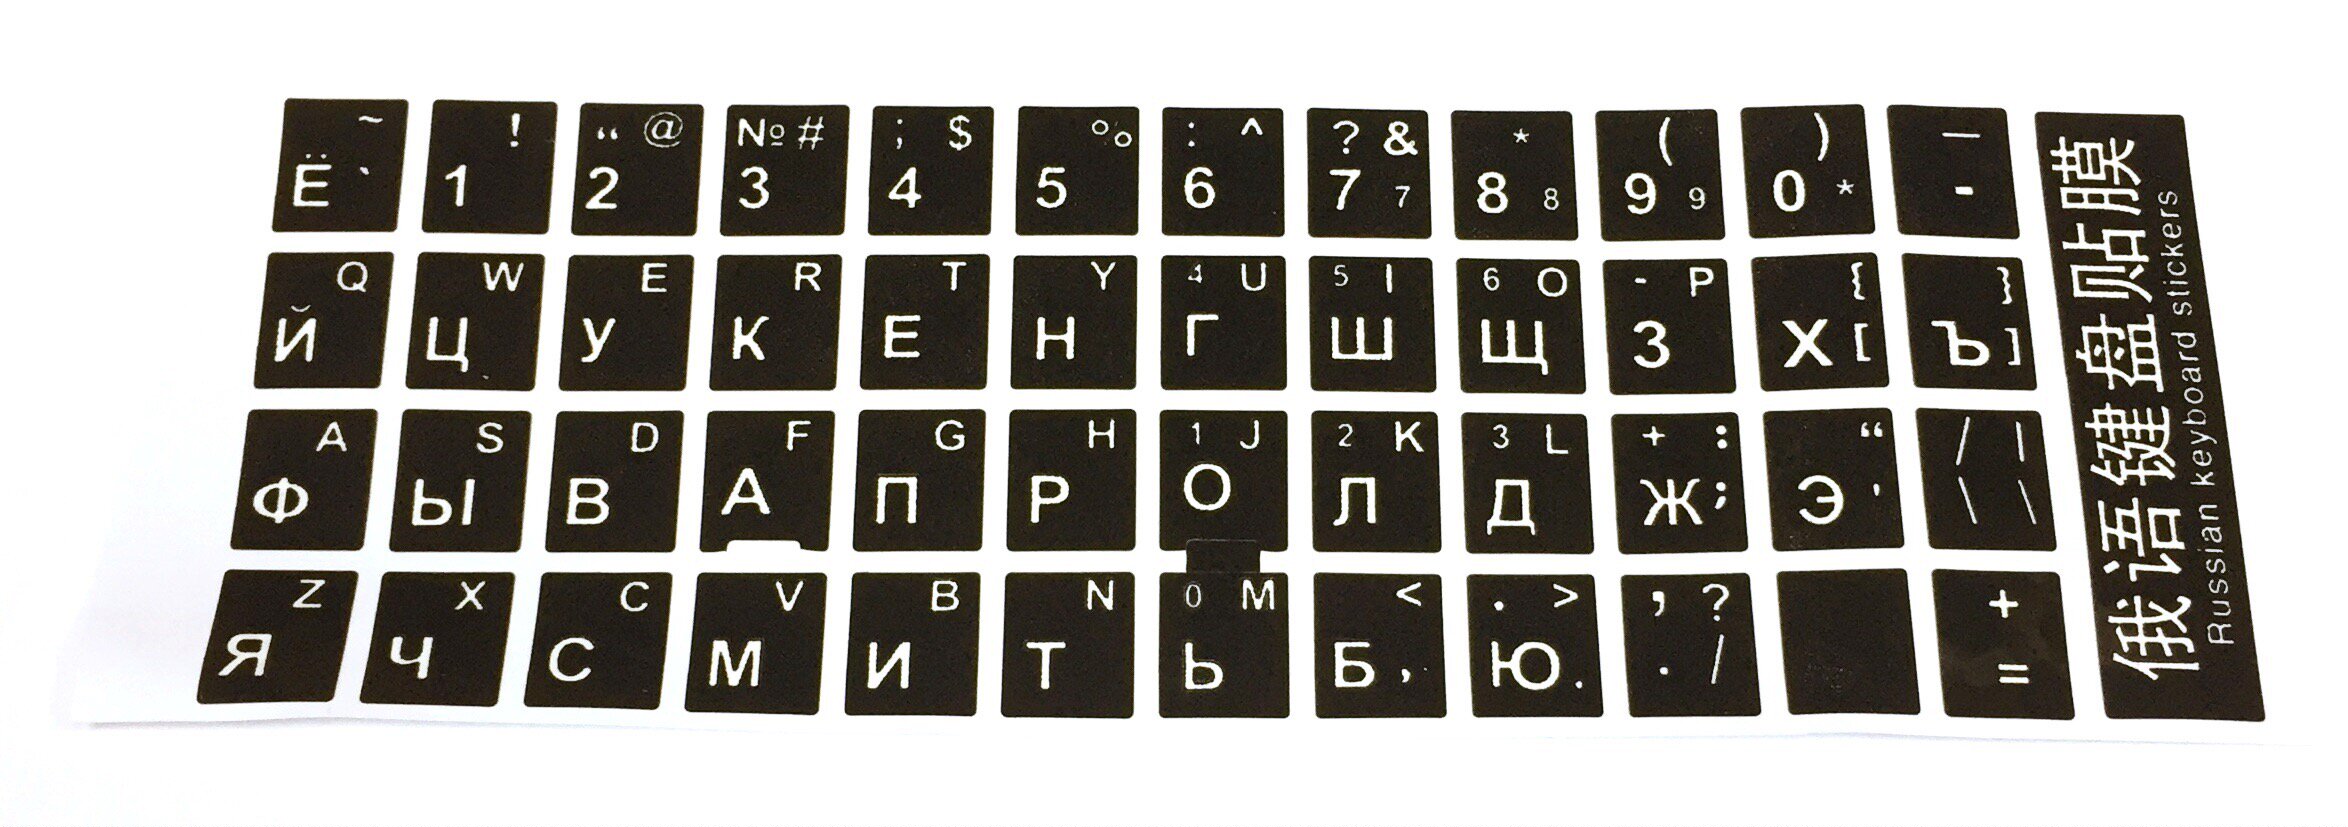 Фото и Картинки русско-английской раскладки клавиатуры